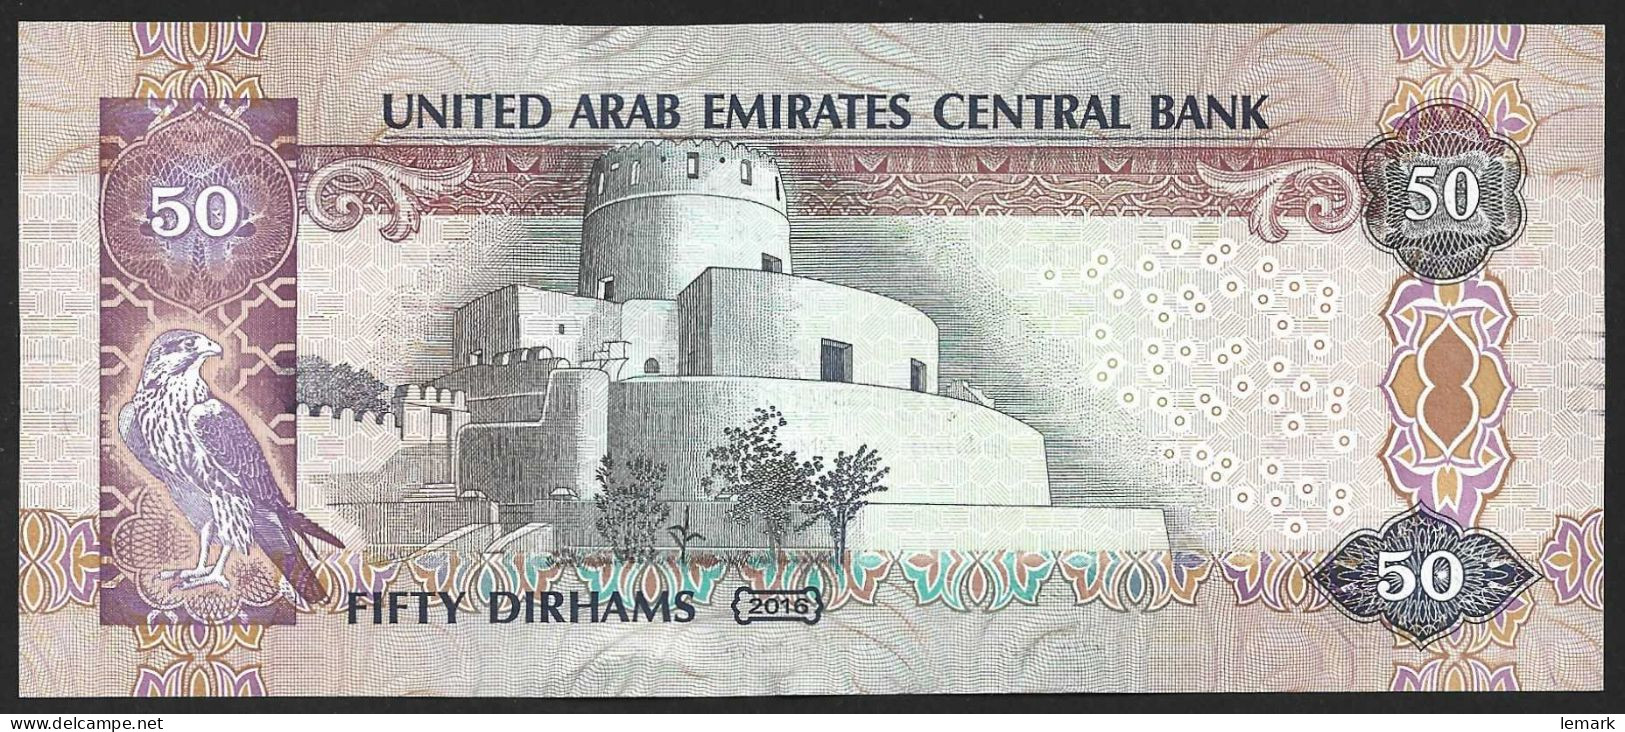 United Arab Emirates 50 Dirhams 2016 P29f AUNC - Emirats Arabes Unis